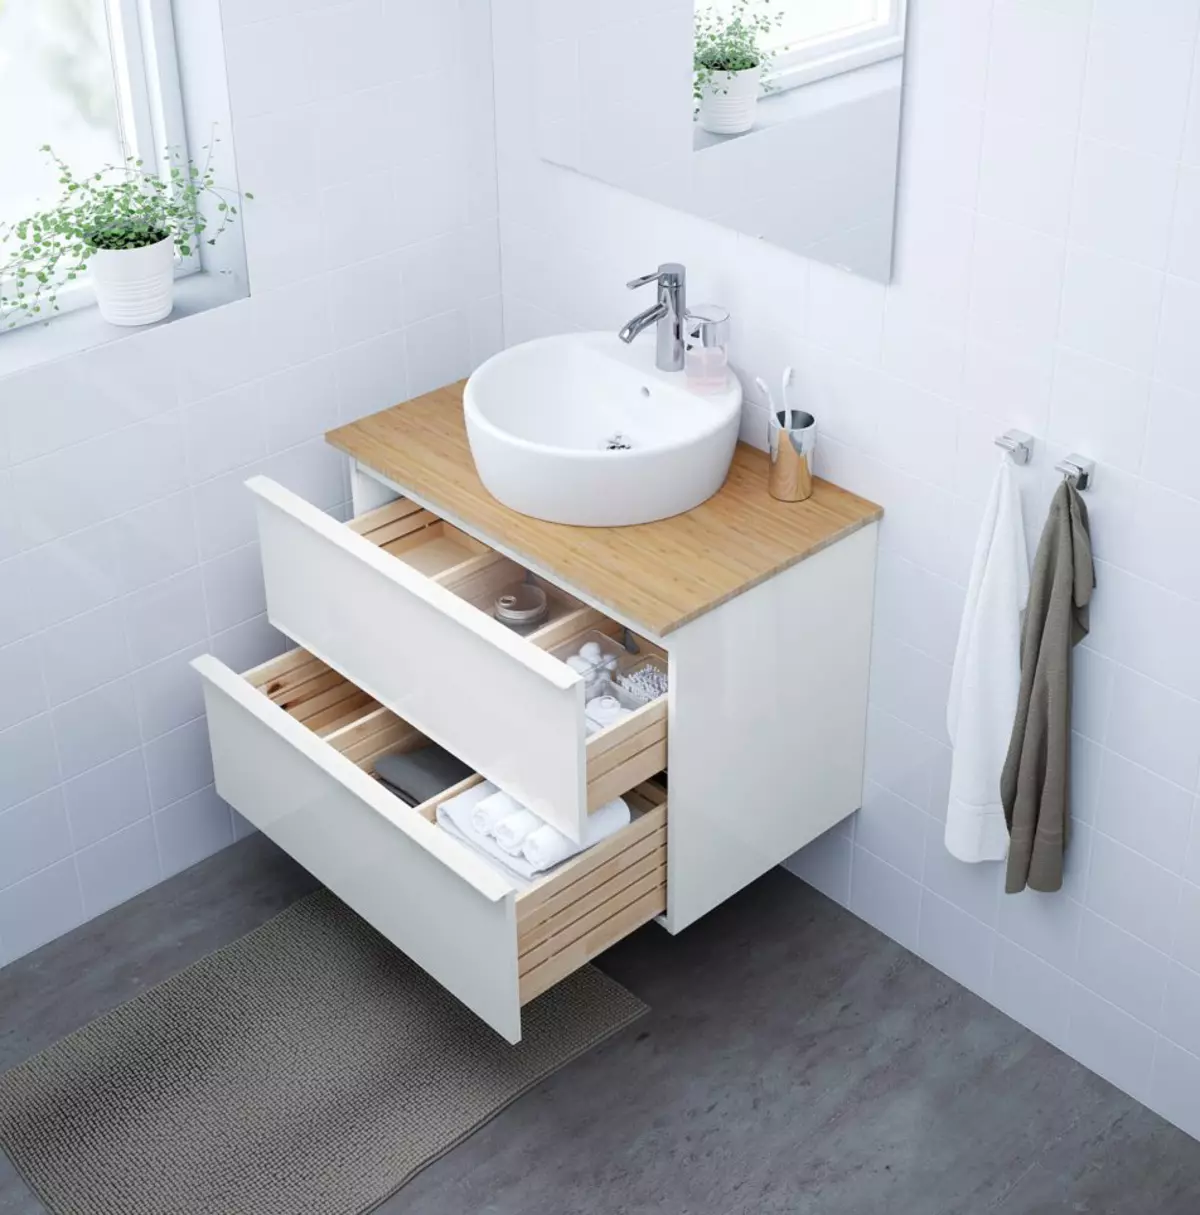 حوض الاستحمام: طاولات الحمام الأصناف، نظرة عامة على العلامة التجارية IKEA وغيرها، المدرجات الخشبية وغيرها 10150_40